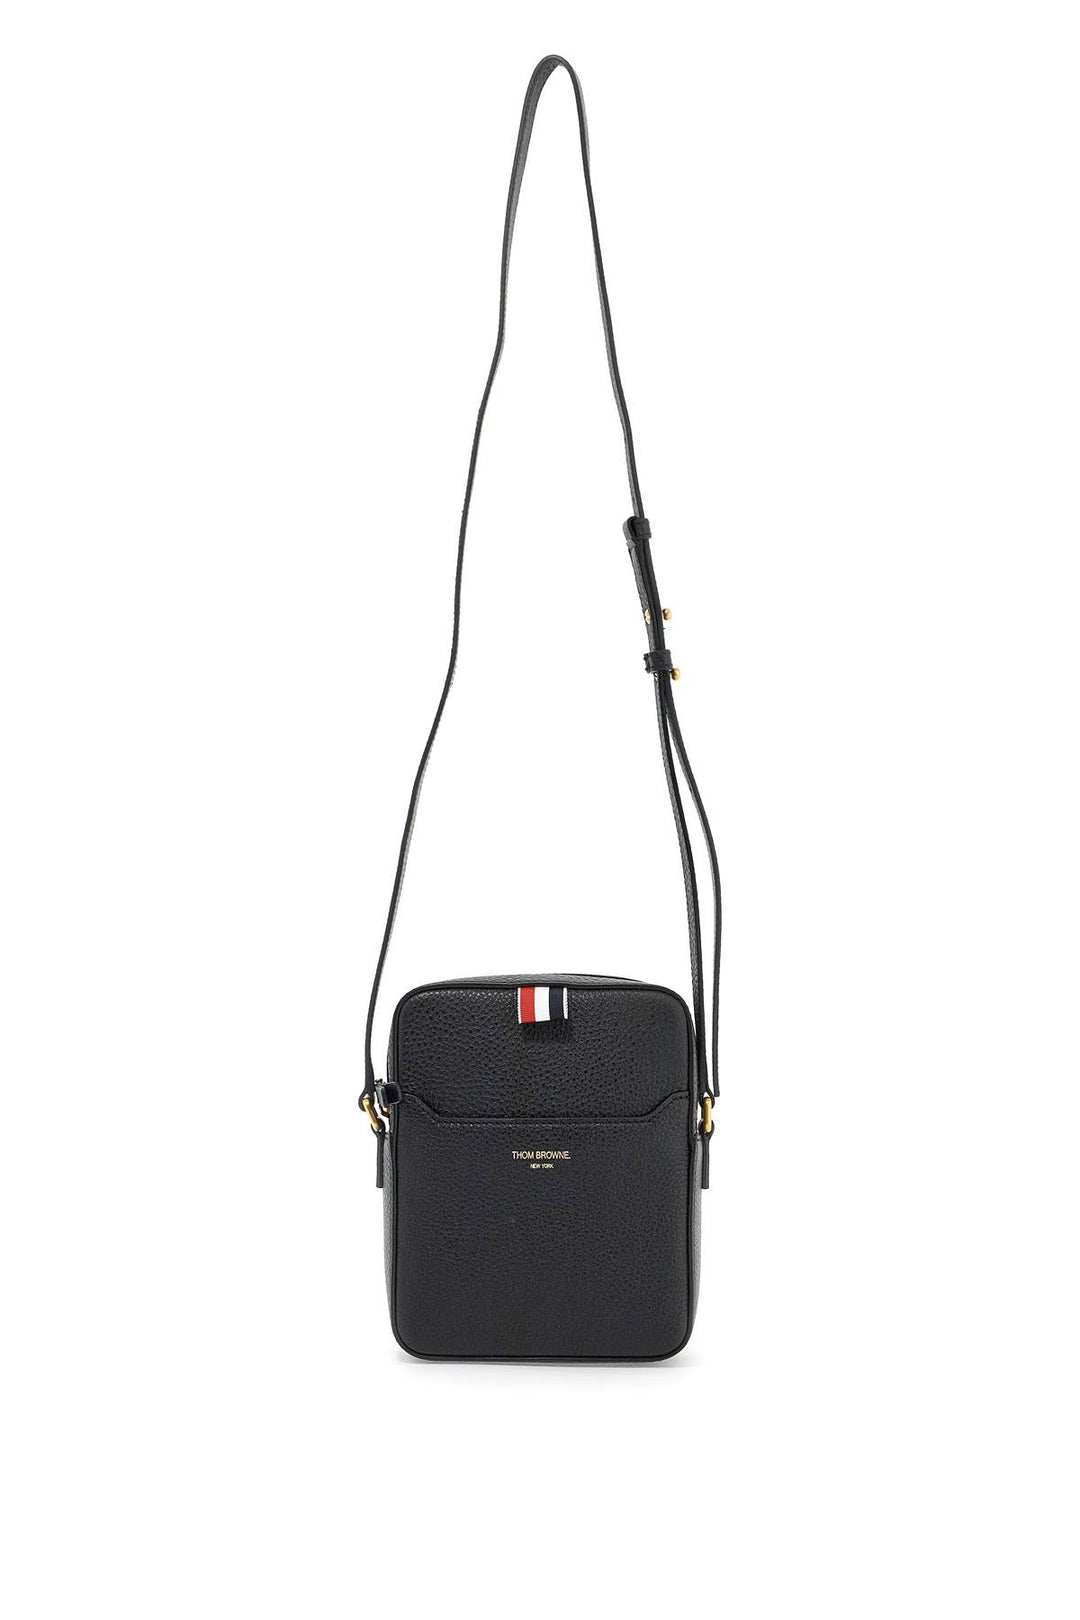 Thom Browne Pebble Grain Leather Vertical Camera Bag   Black